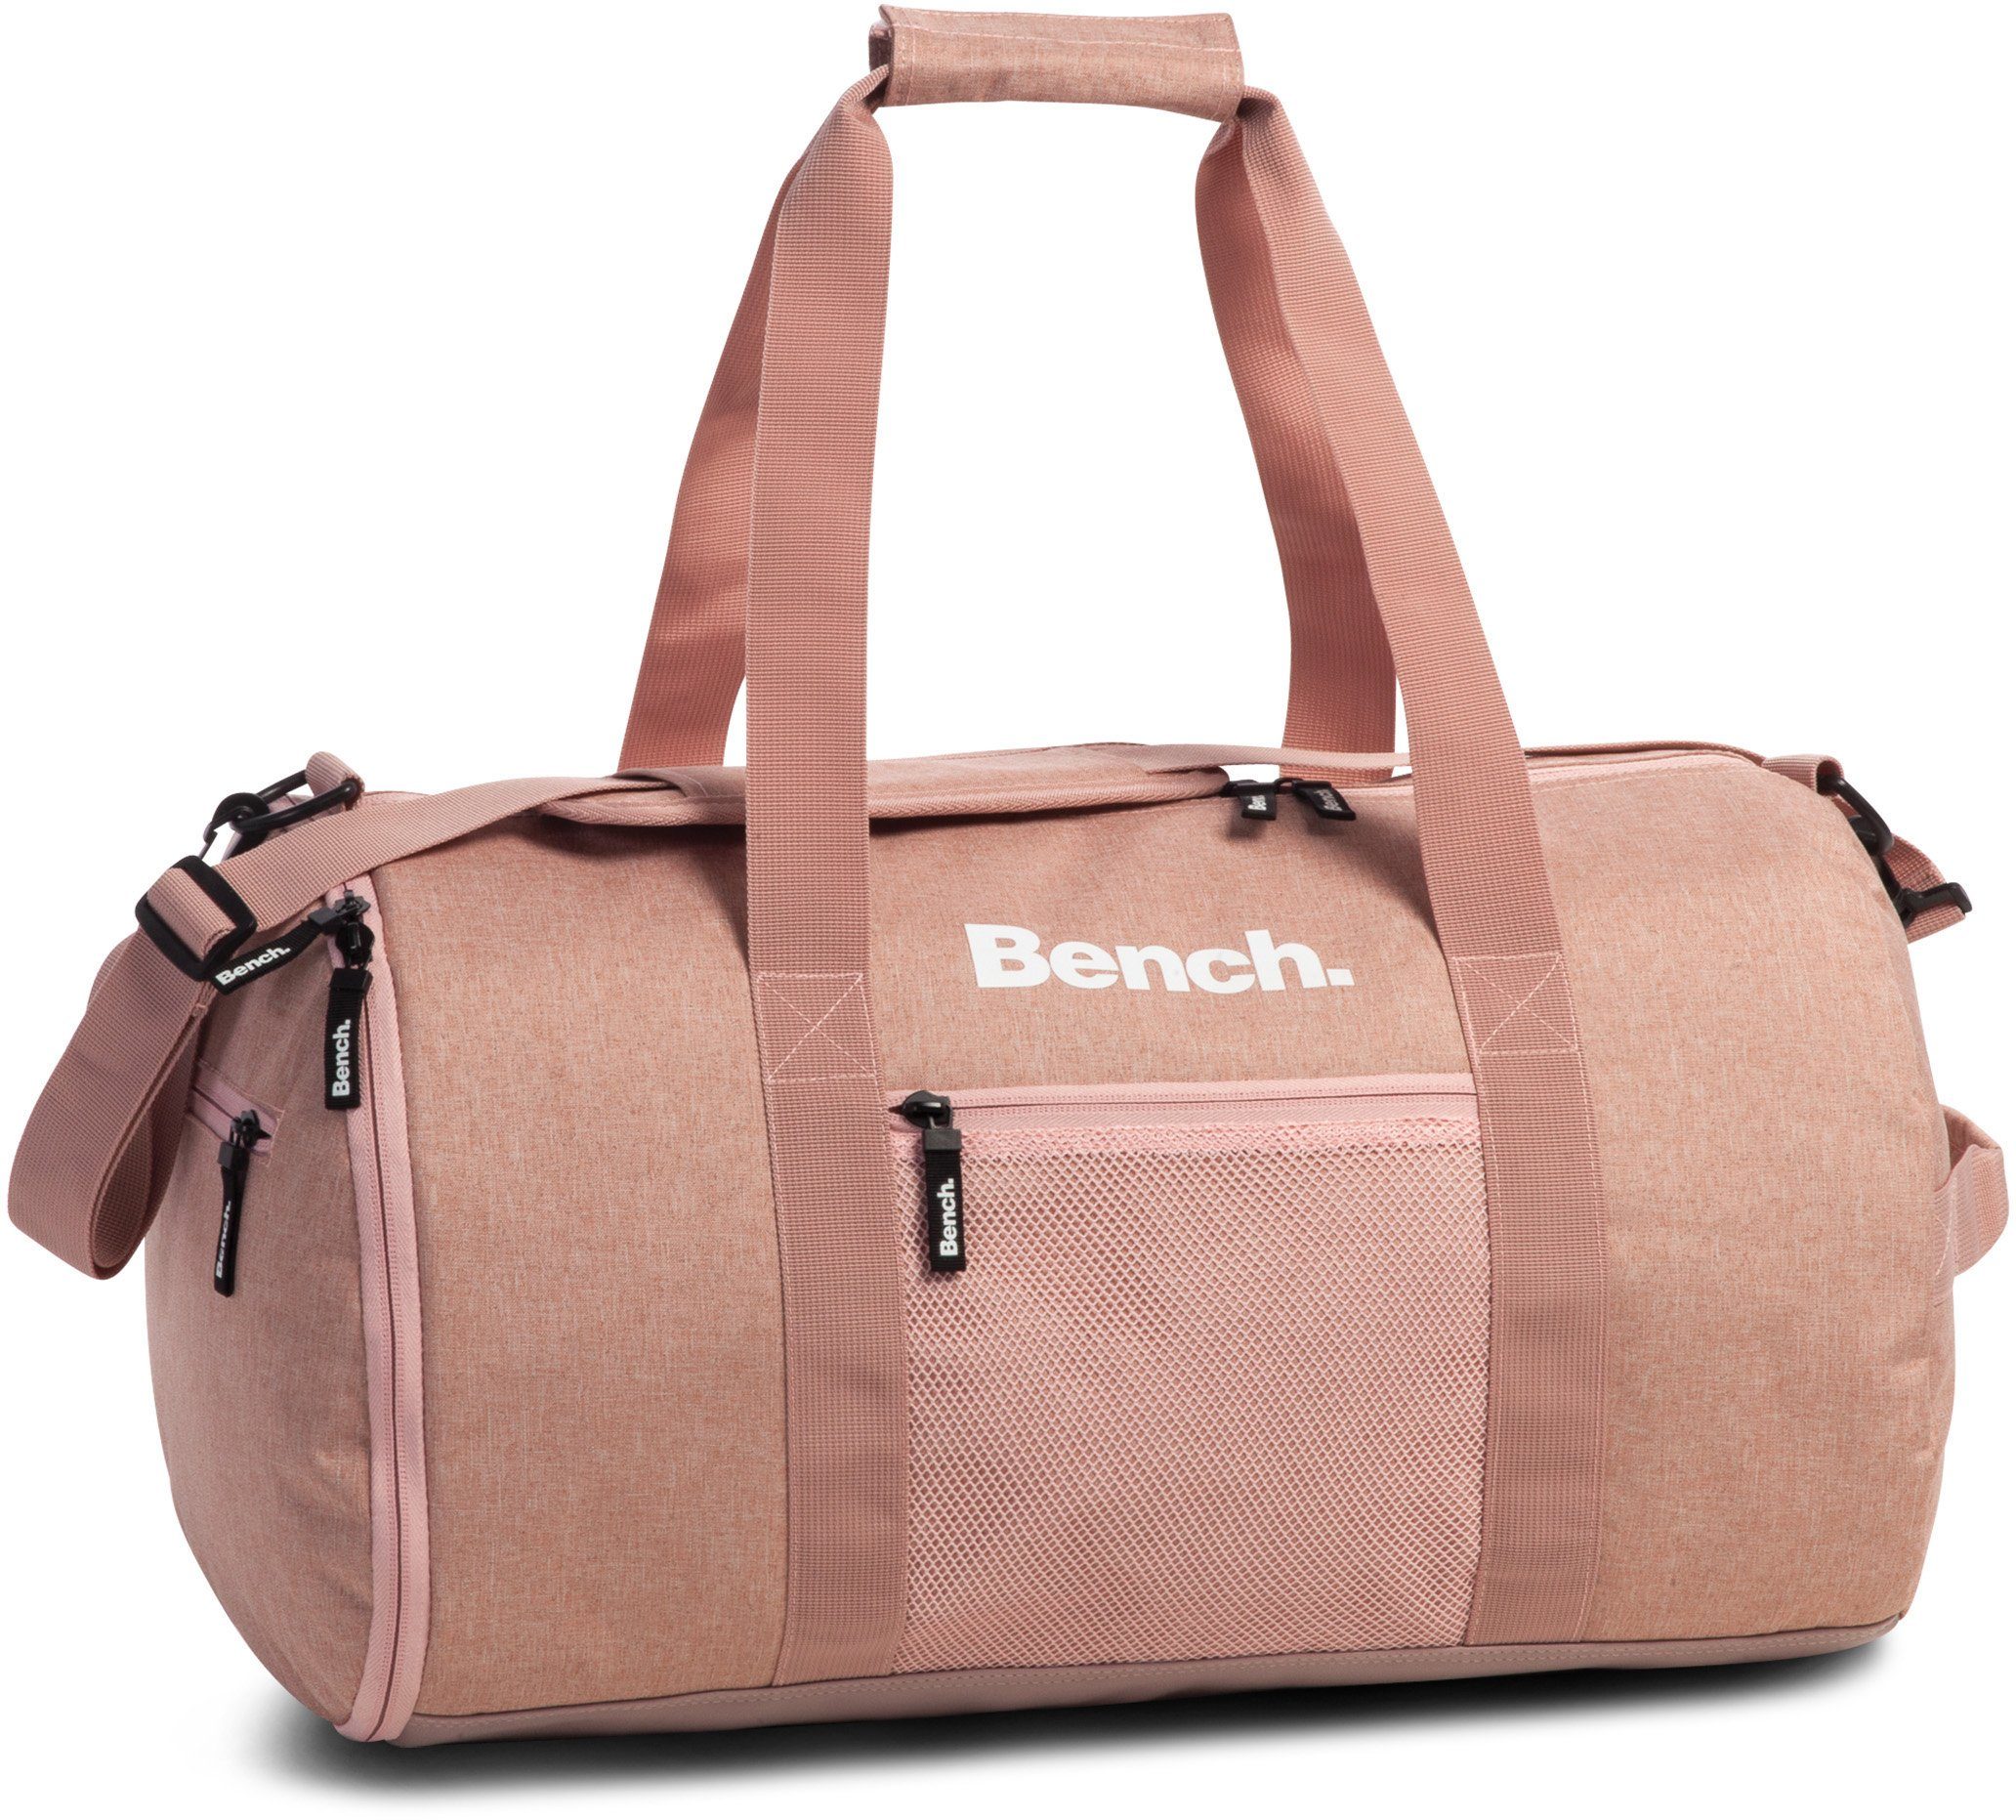 Bench. Reisetasche Sporttasche, 30 L rosa-rot | Reisetaschen